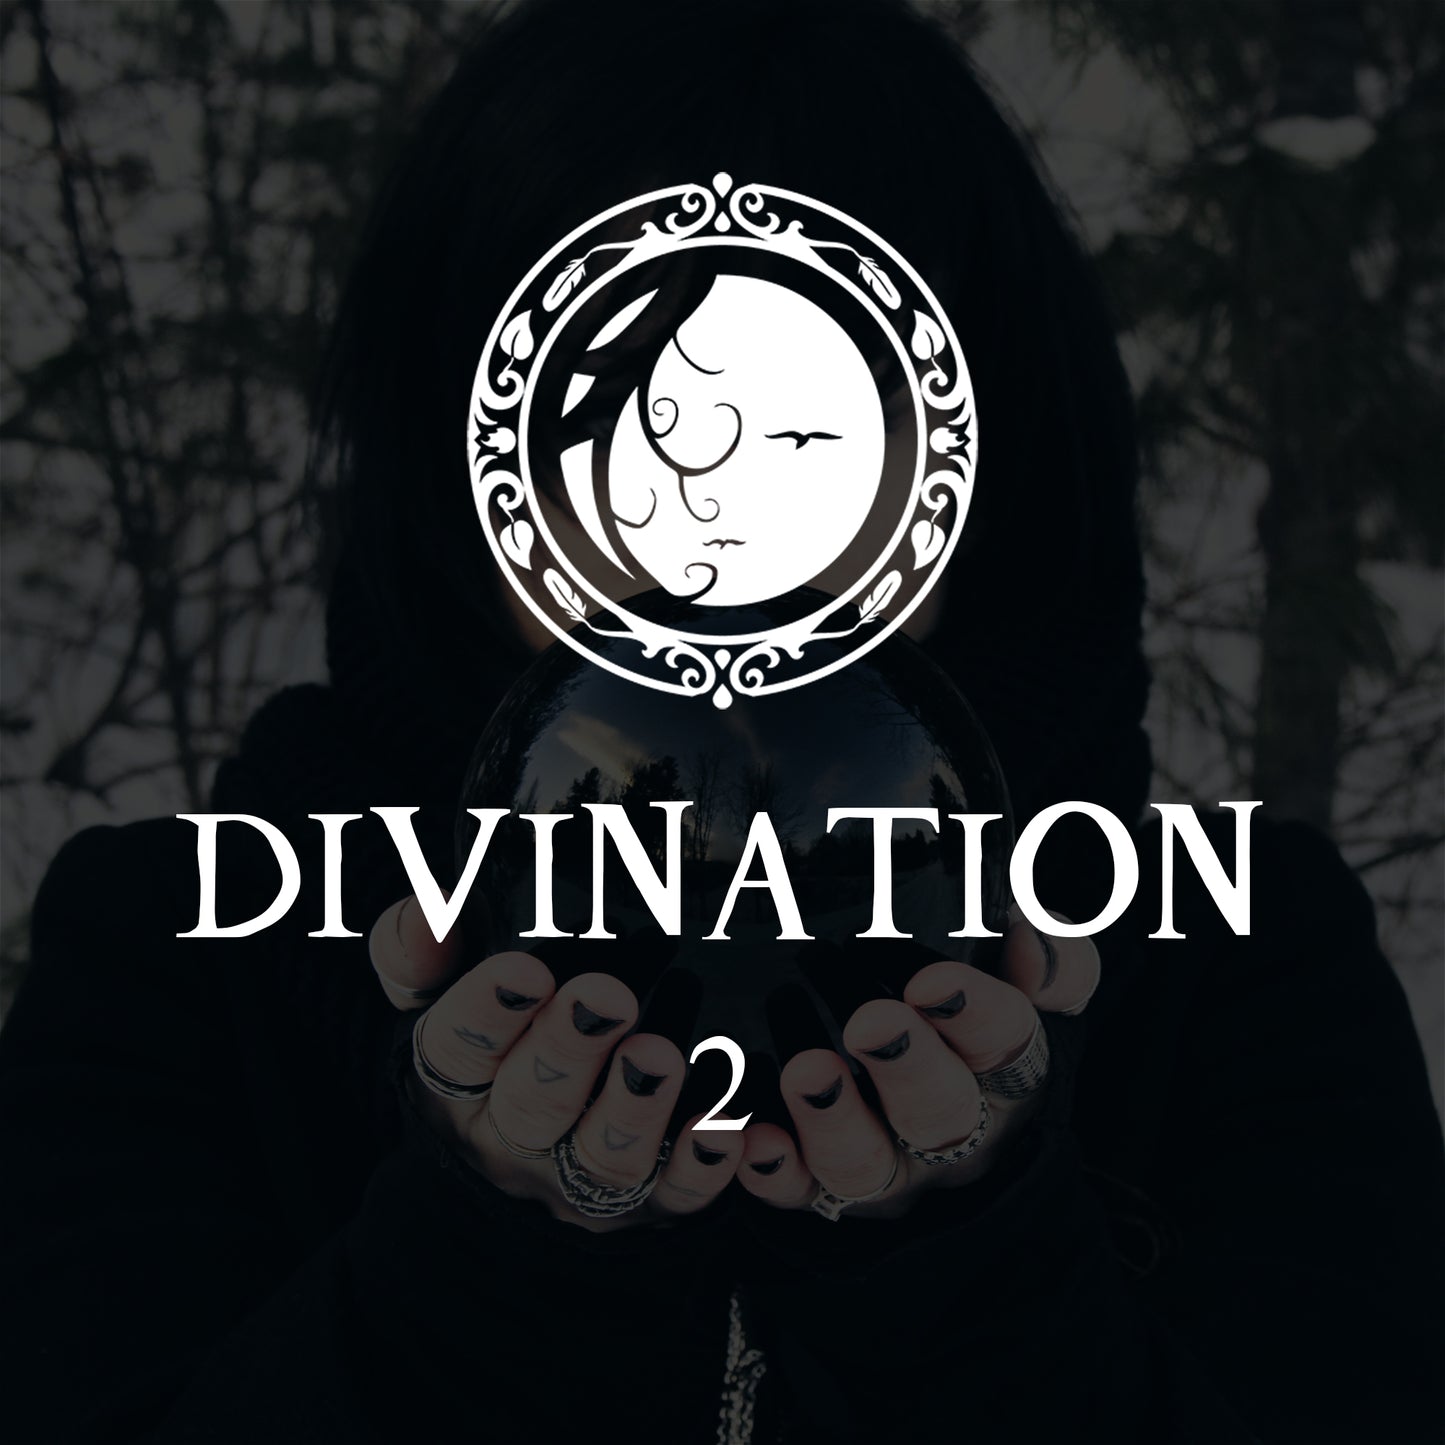 DIVINATION (N2) Amplification de vos séances